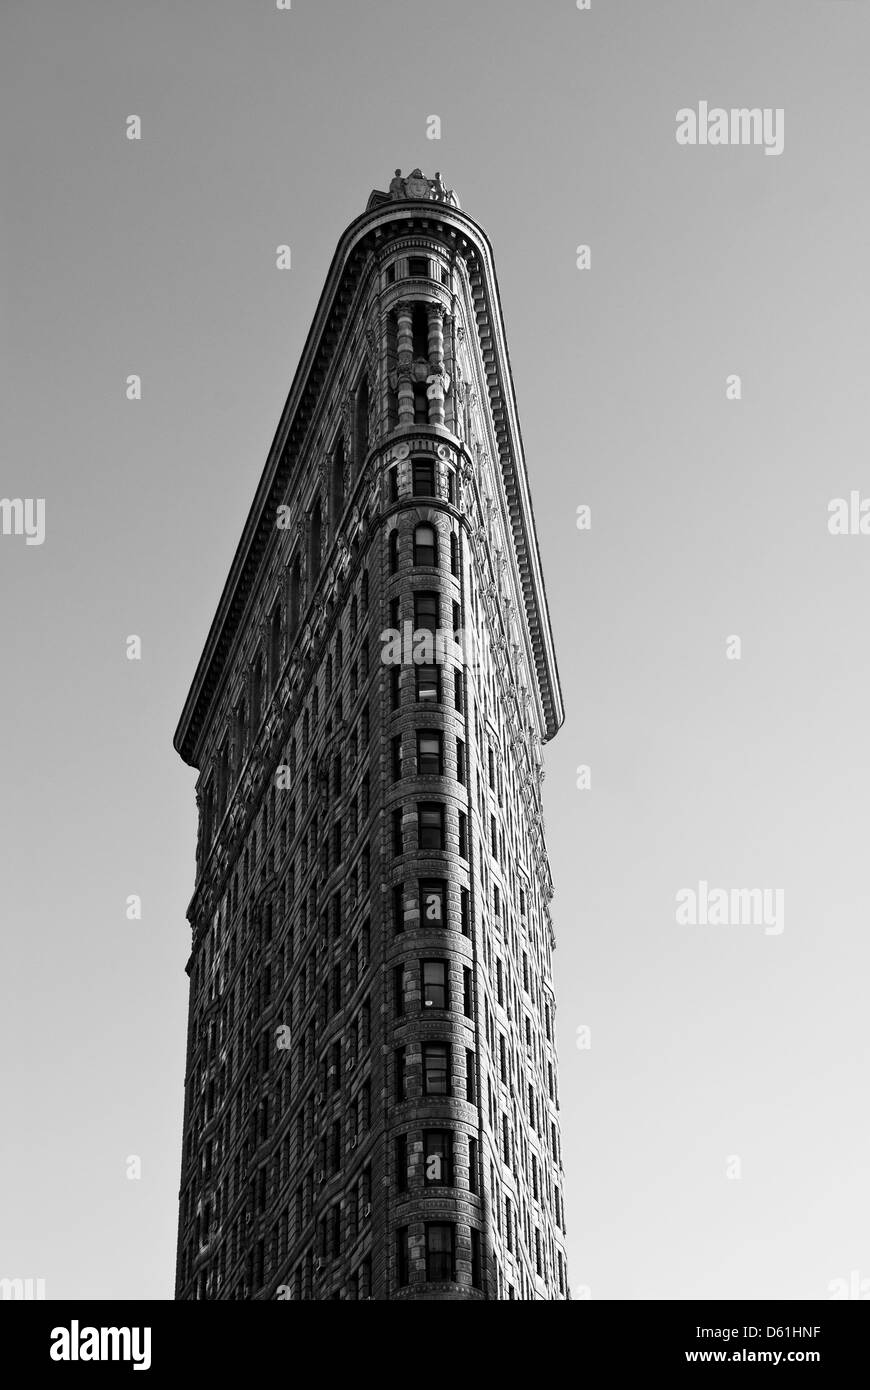 Flatiron Building on 23rd Street, Manhattan, New York, New York, Stati Uniti d'America - immagine presa dal suolo pubblico Foto Stock